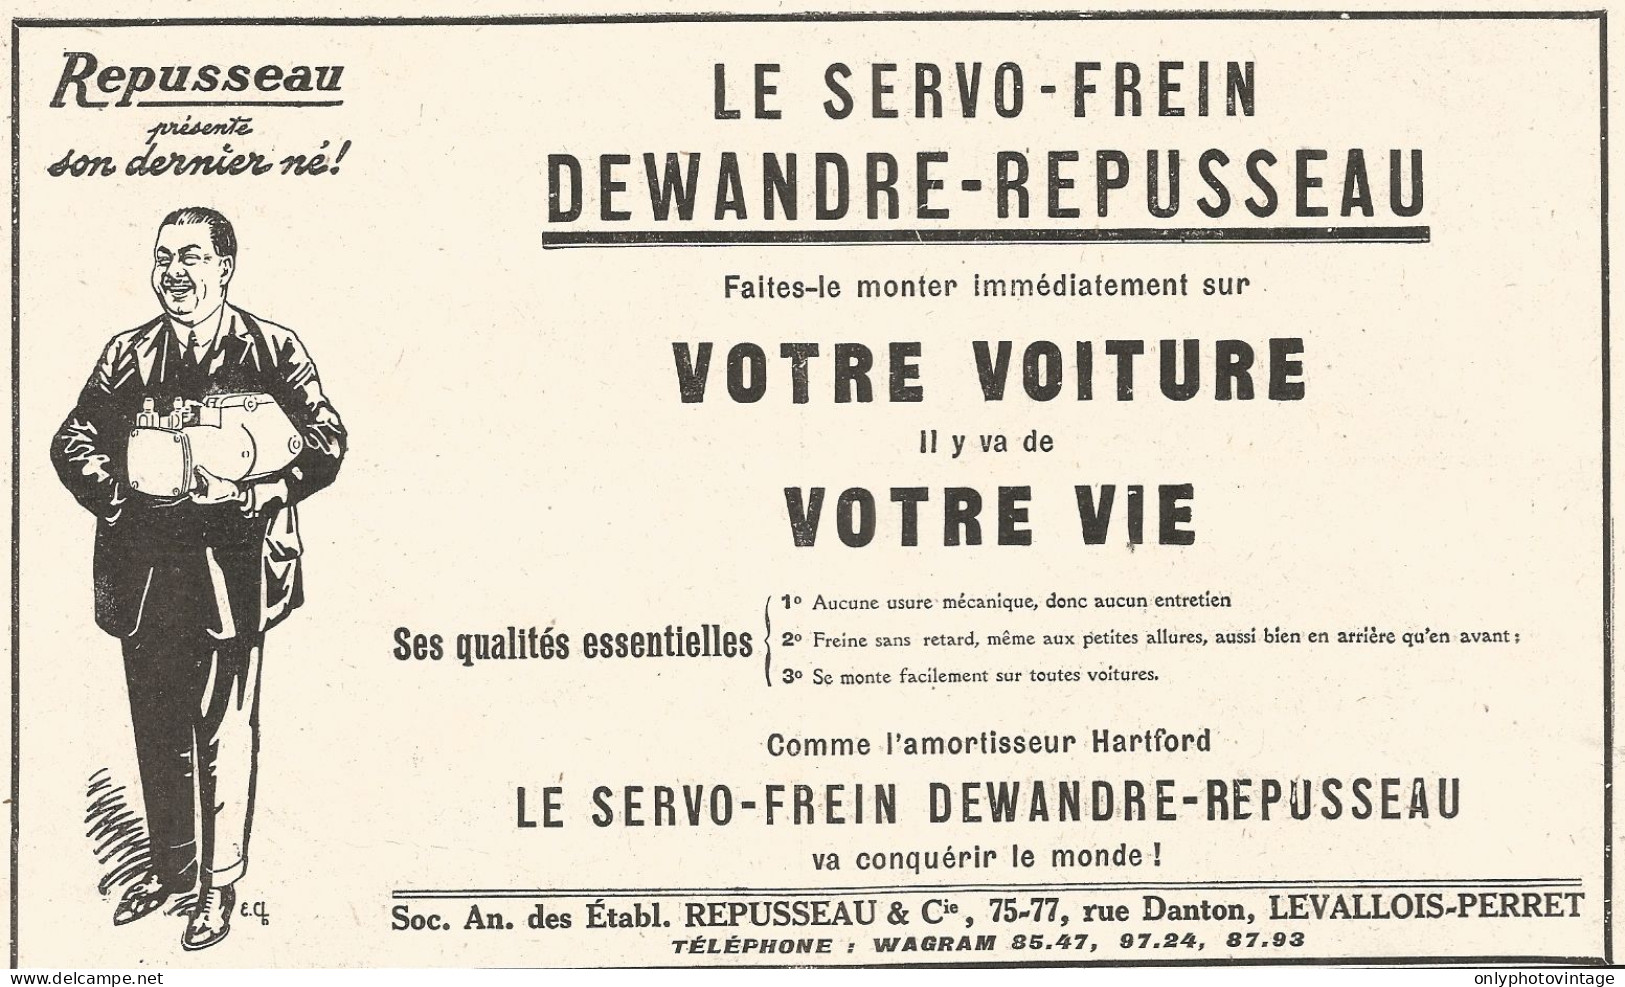 Le Servo-Frein Dewandre-Repusseau - Pubblicitï¿½ Del 1926 - Old Advertising - Advertising